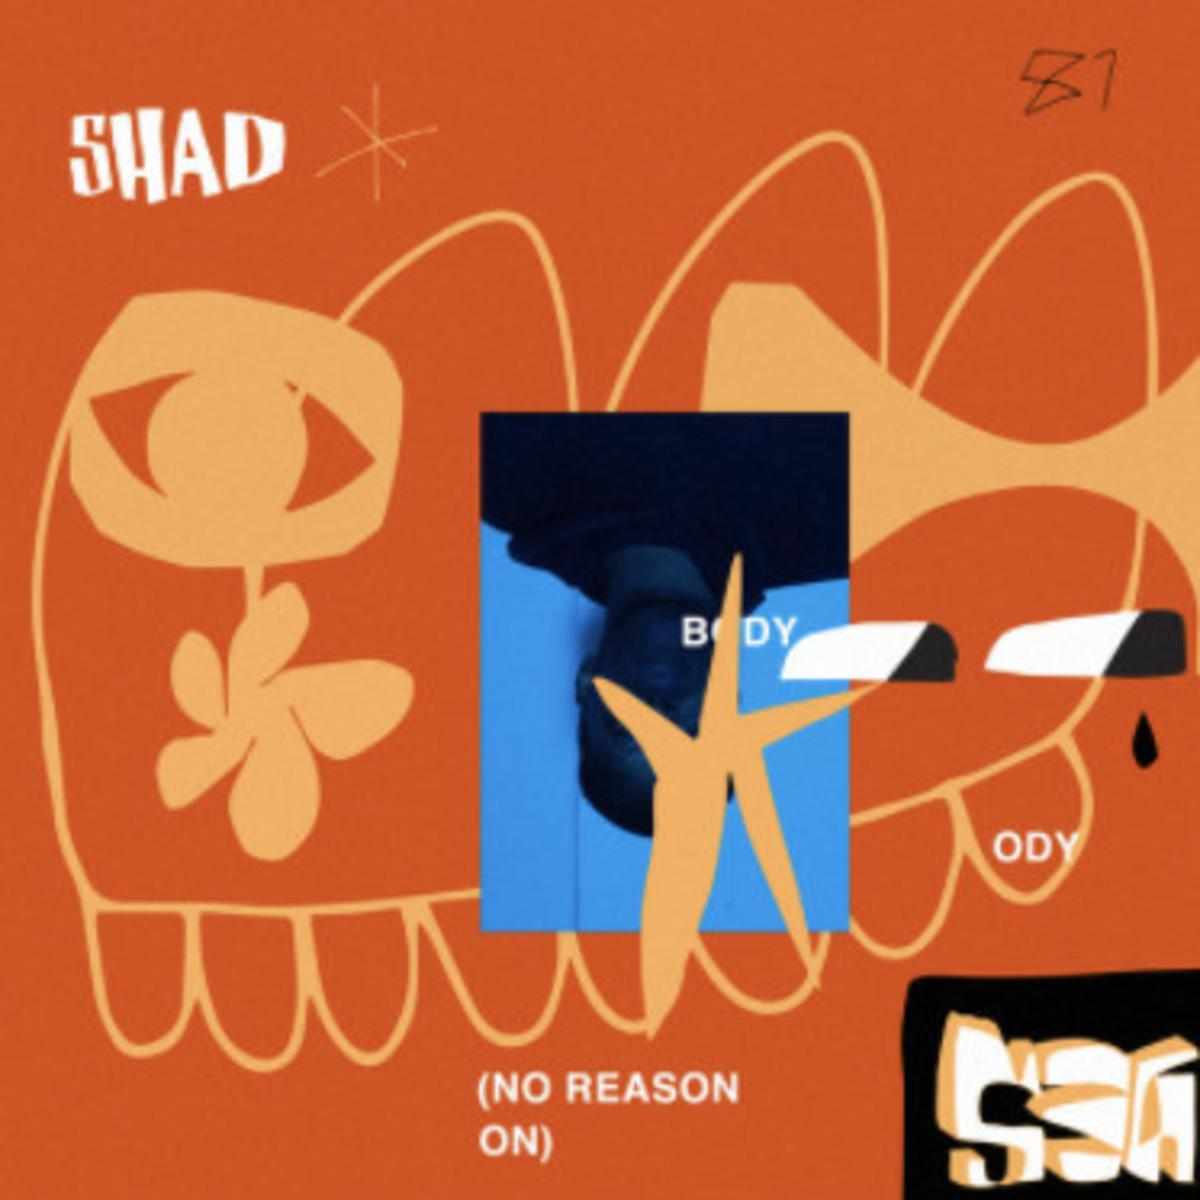 Shad Body (no Reason)